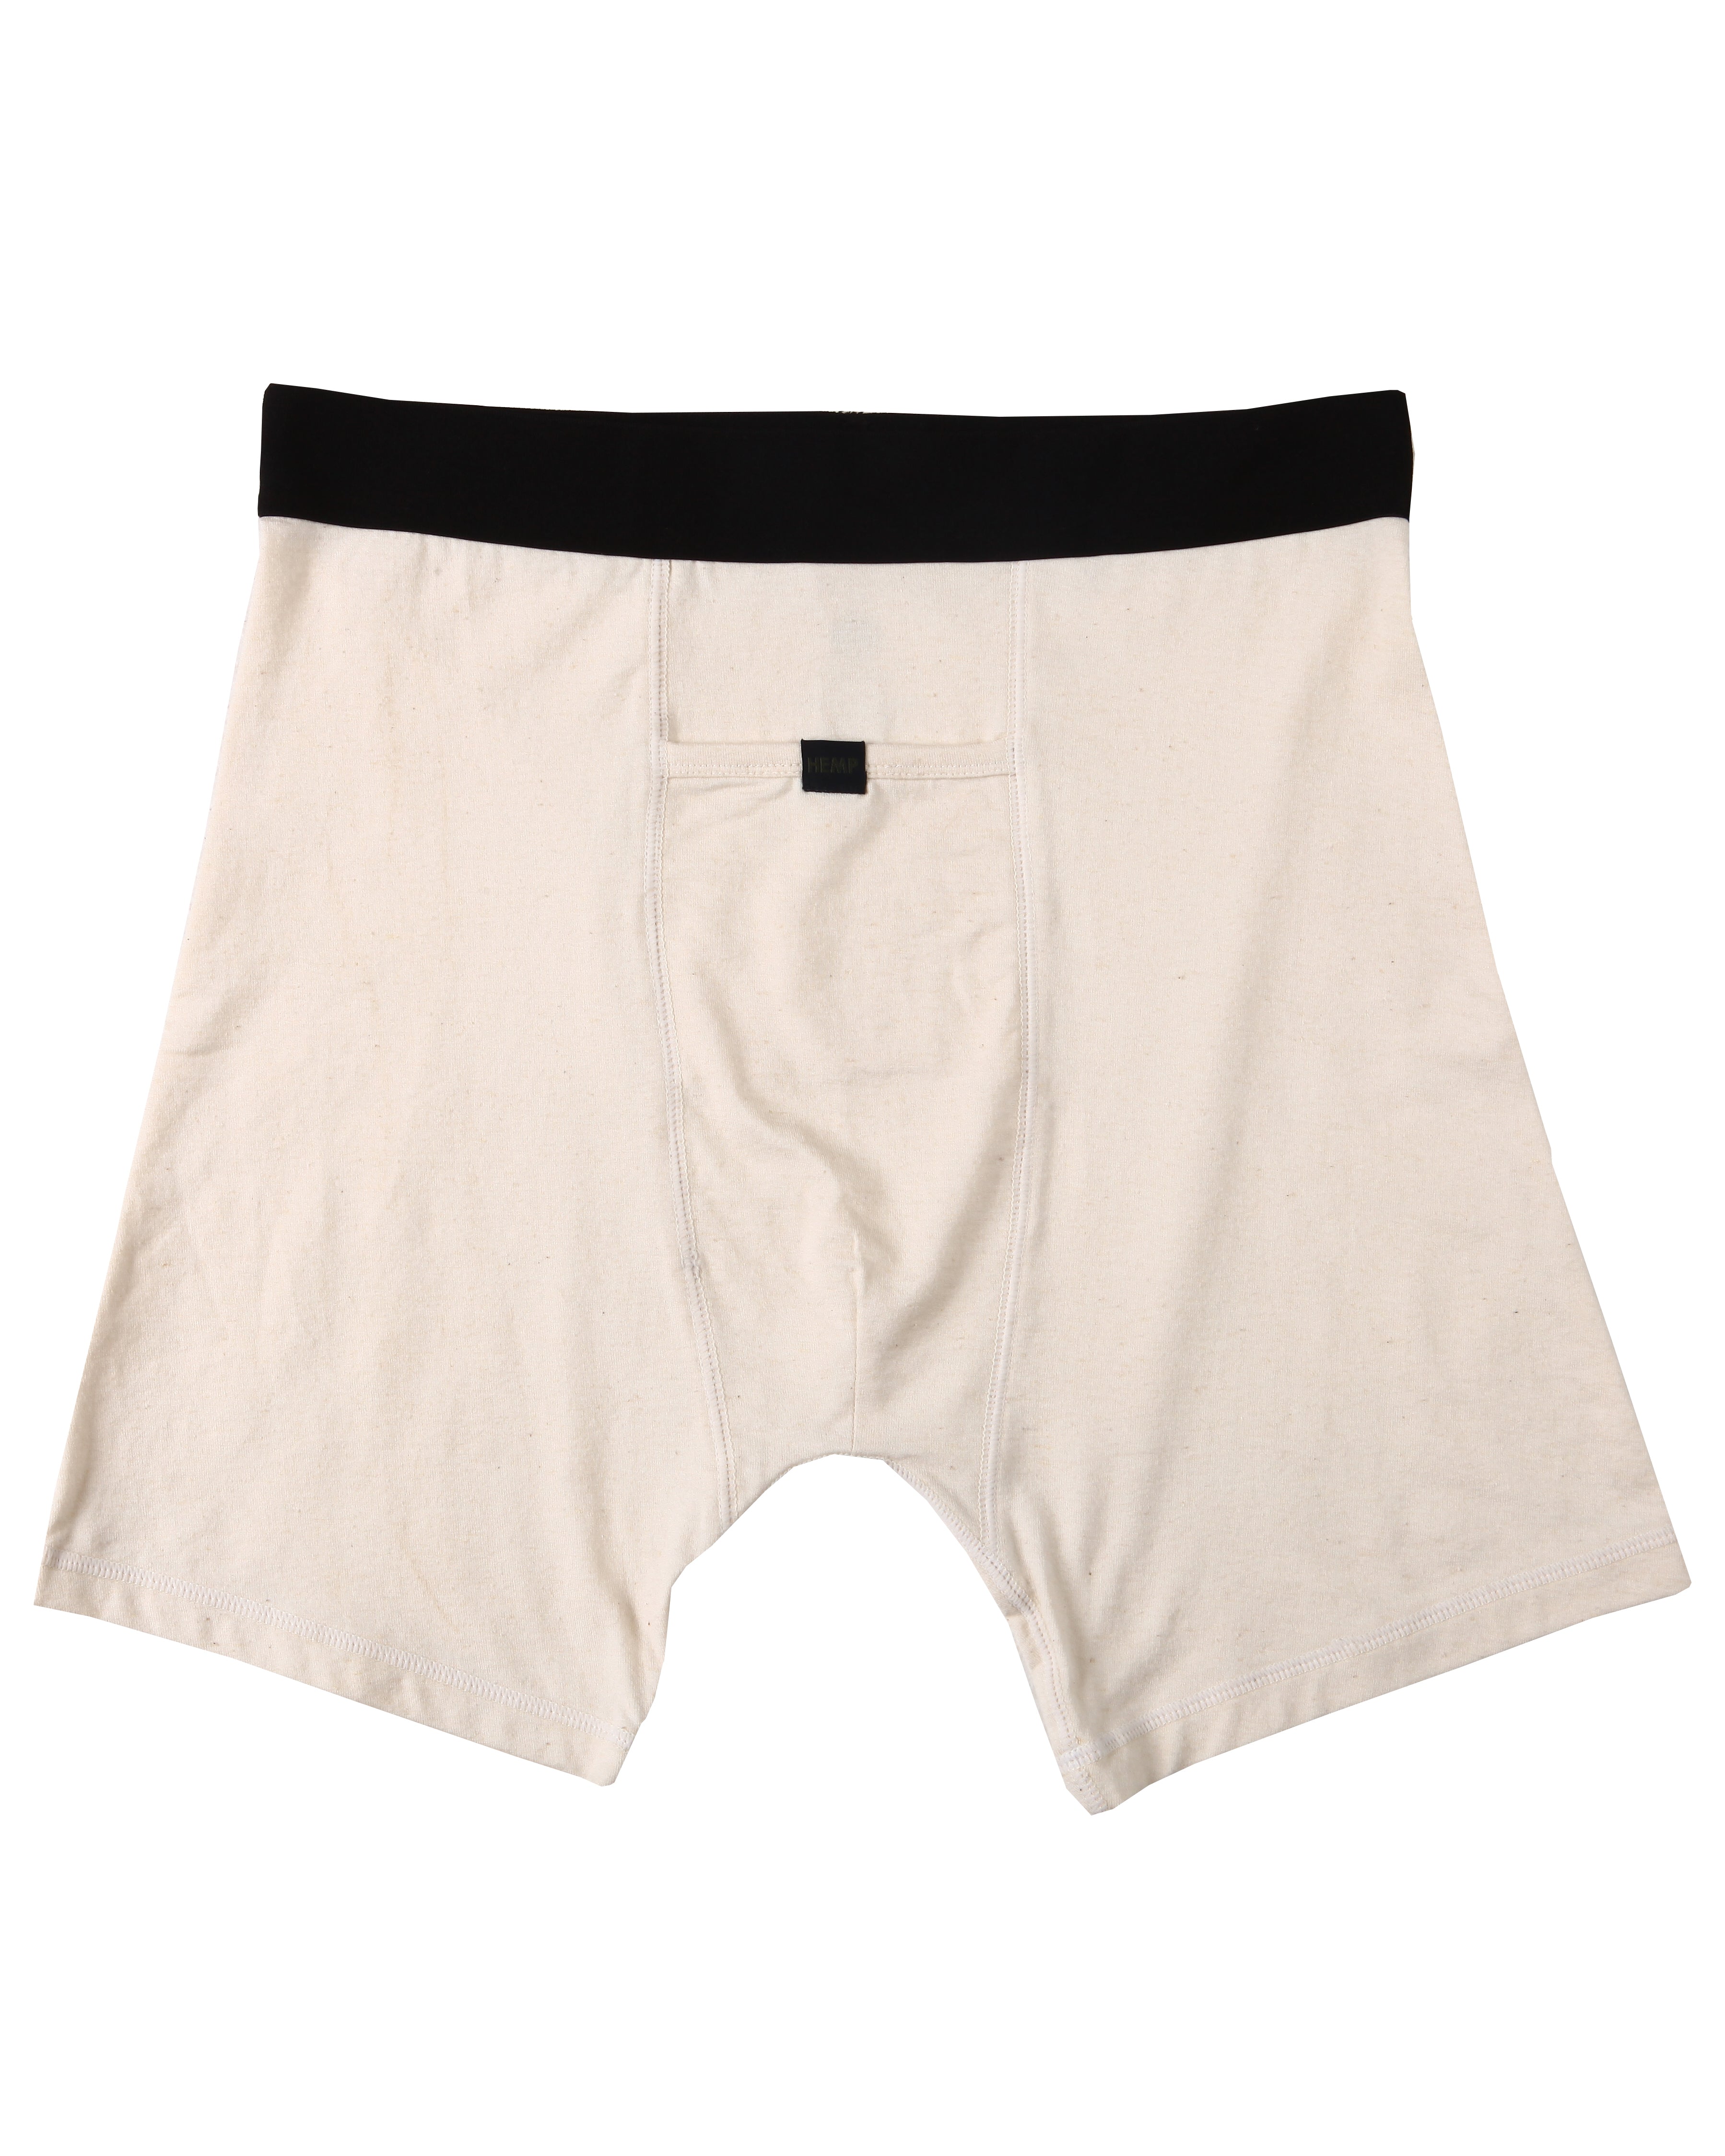 Men's hemp underwear - Bohempia®